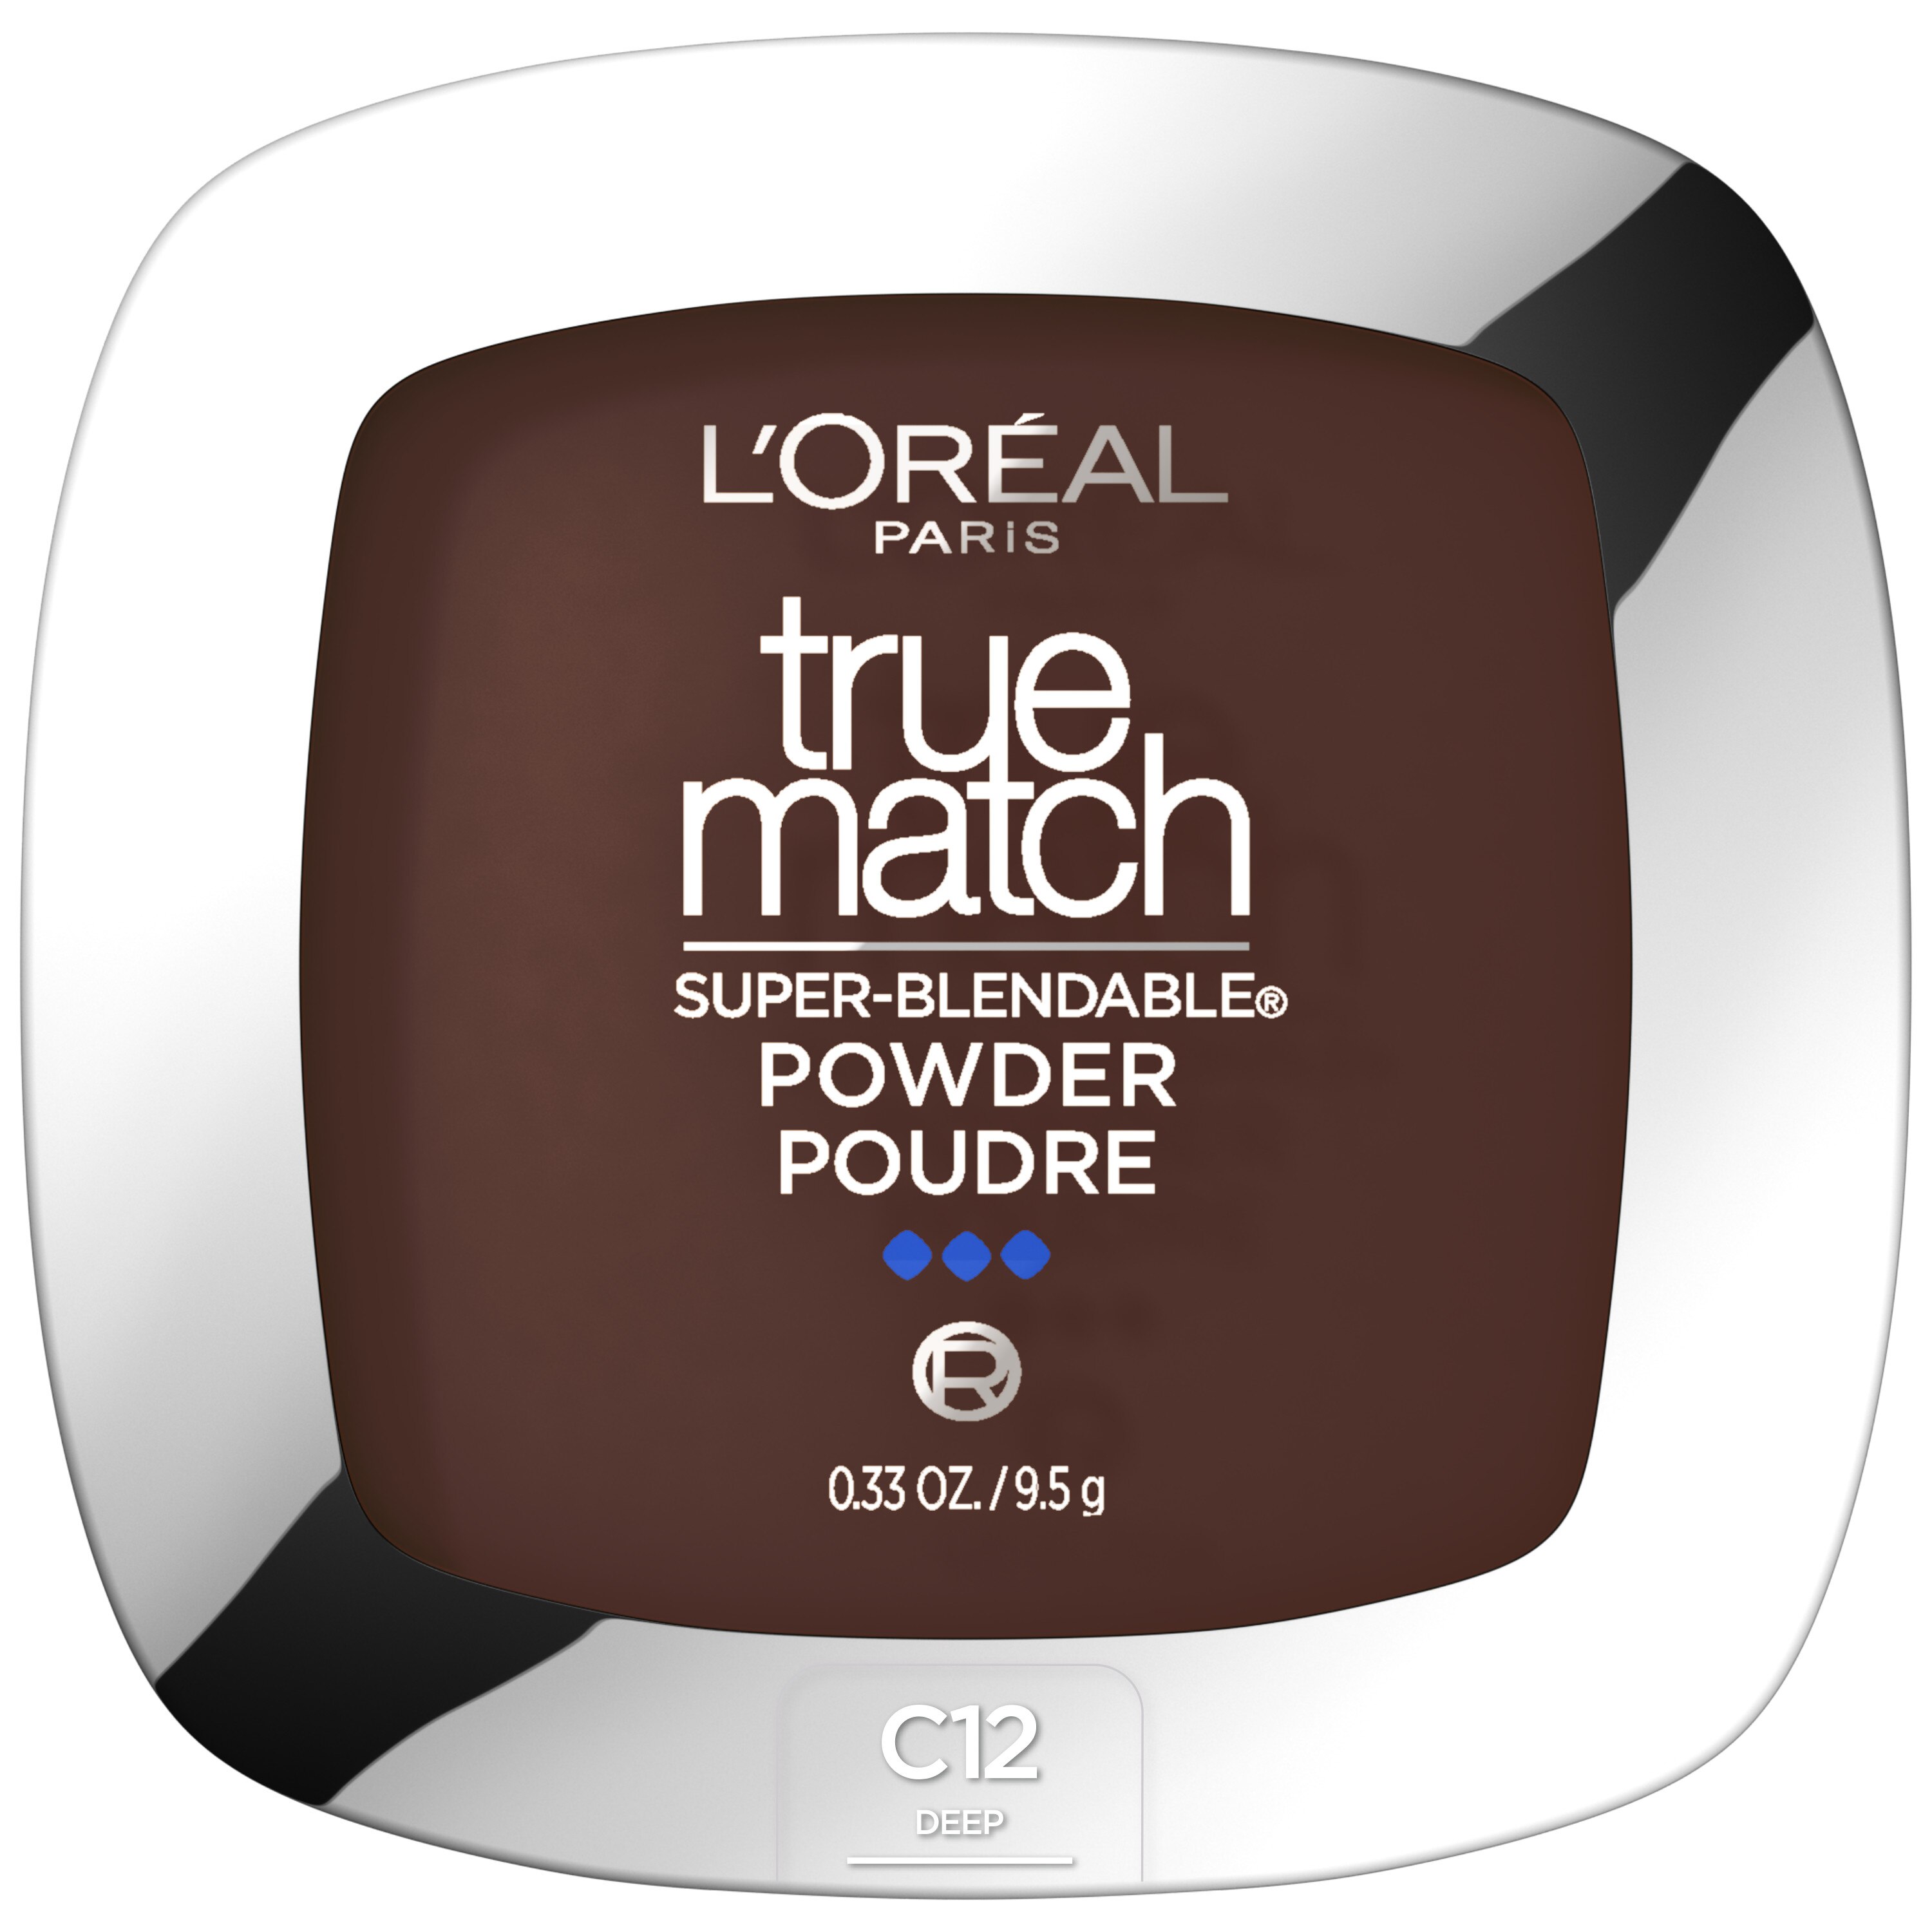 L'Oreal Paris True Match Powder, C12 , CVS